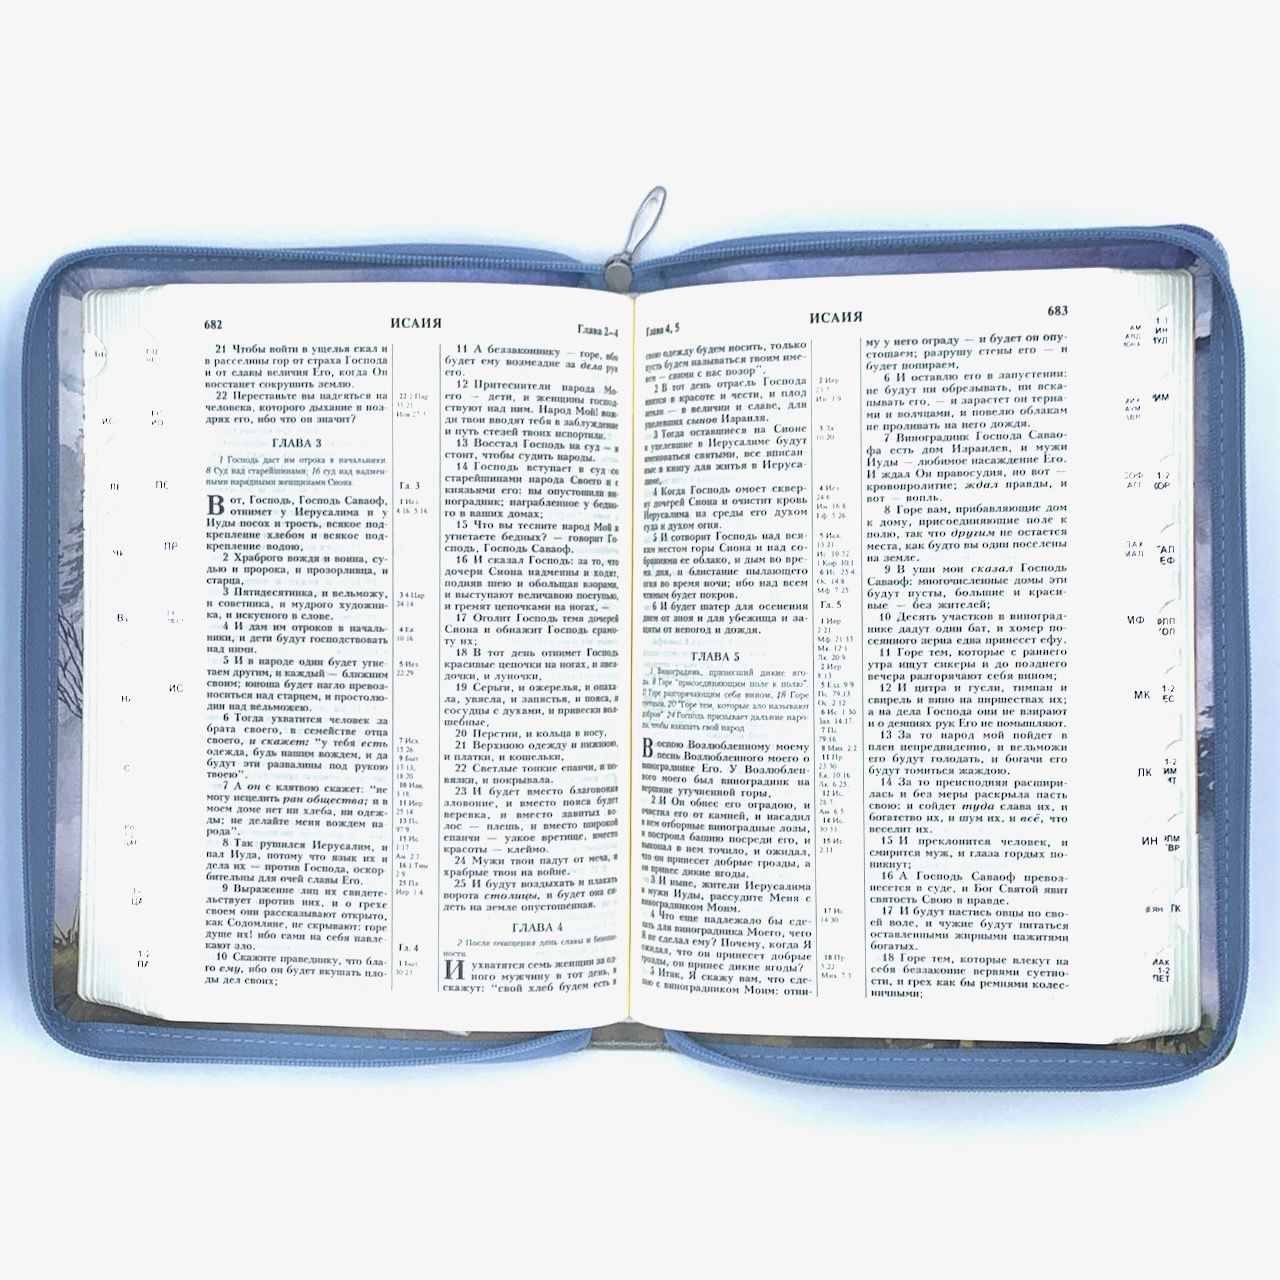 Библия 055 zti  код 11552 переплет из эко кожи на молнии, изображение гор надпись "Библия", формат 145*205 мм, парал. места по центру страницы, кремовые страницы, серебряный обрез, индексы,  крупный шрифт